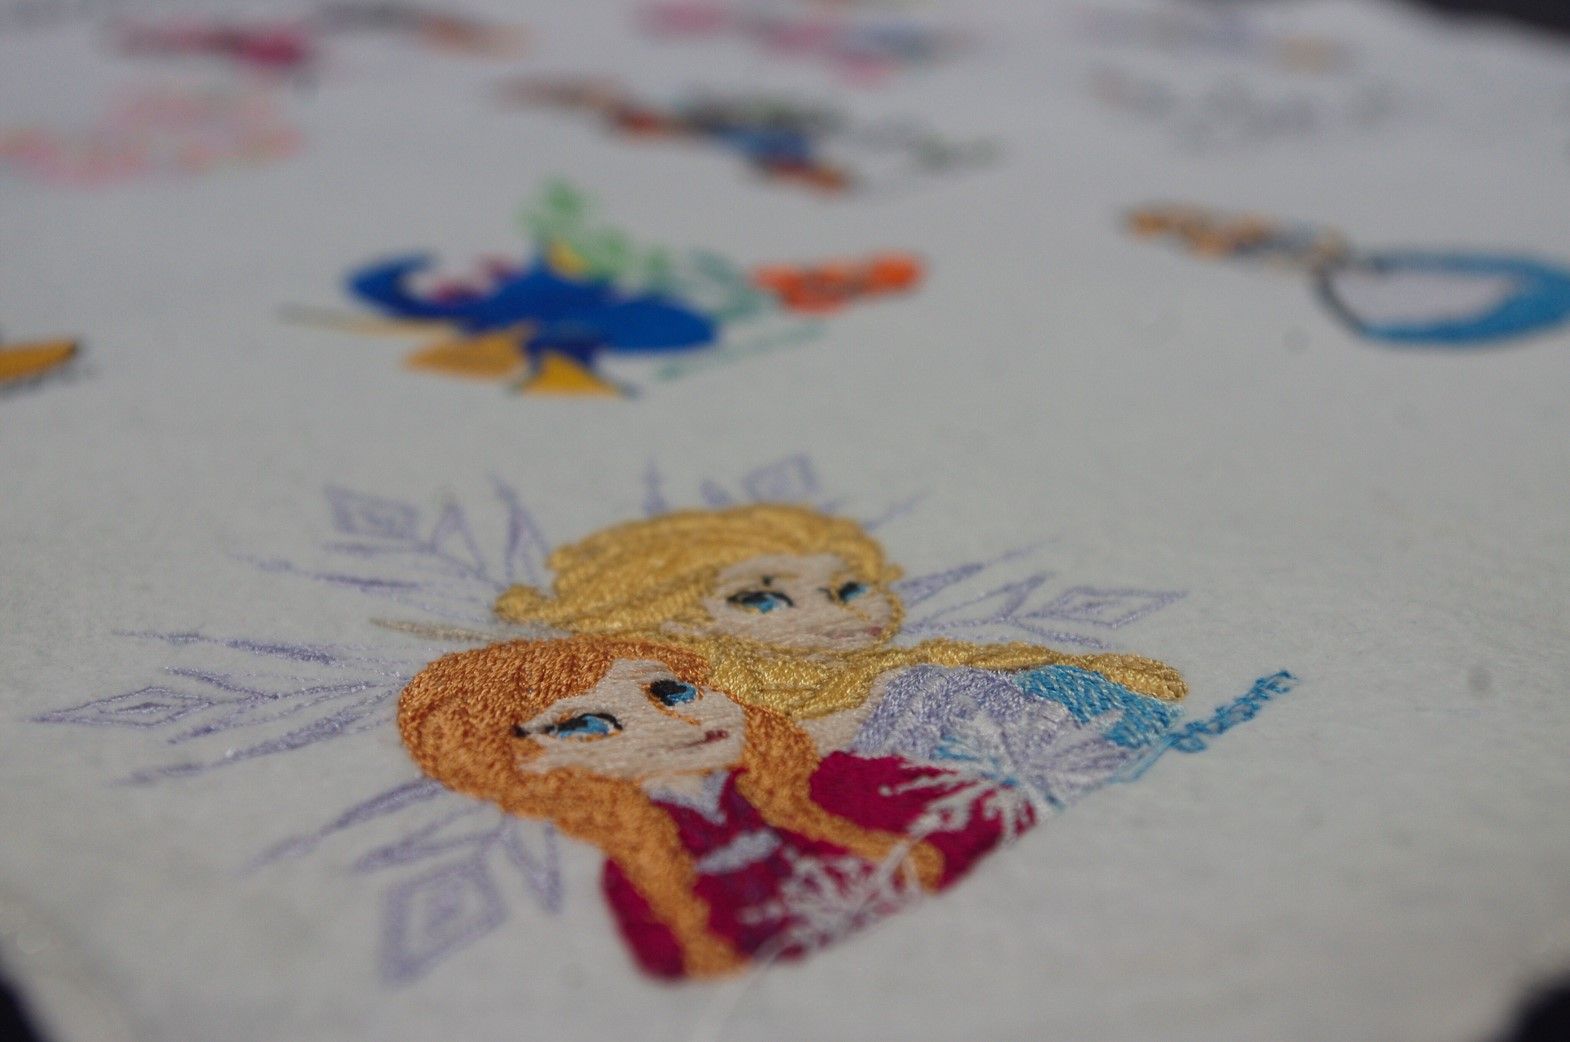 ミシンショップタケダ ブラザーの Fm00d にはディズニーの刺しゅう模様がたくさん内蔵されています ミッキー Amp ミニー ディズニープリンセス くまのプーさん ピクサー アナと雪の女王などディズニーは45種類あります Fm00d ディズニー刺繍